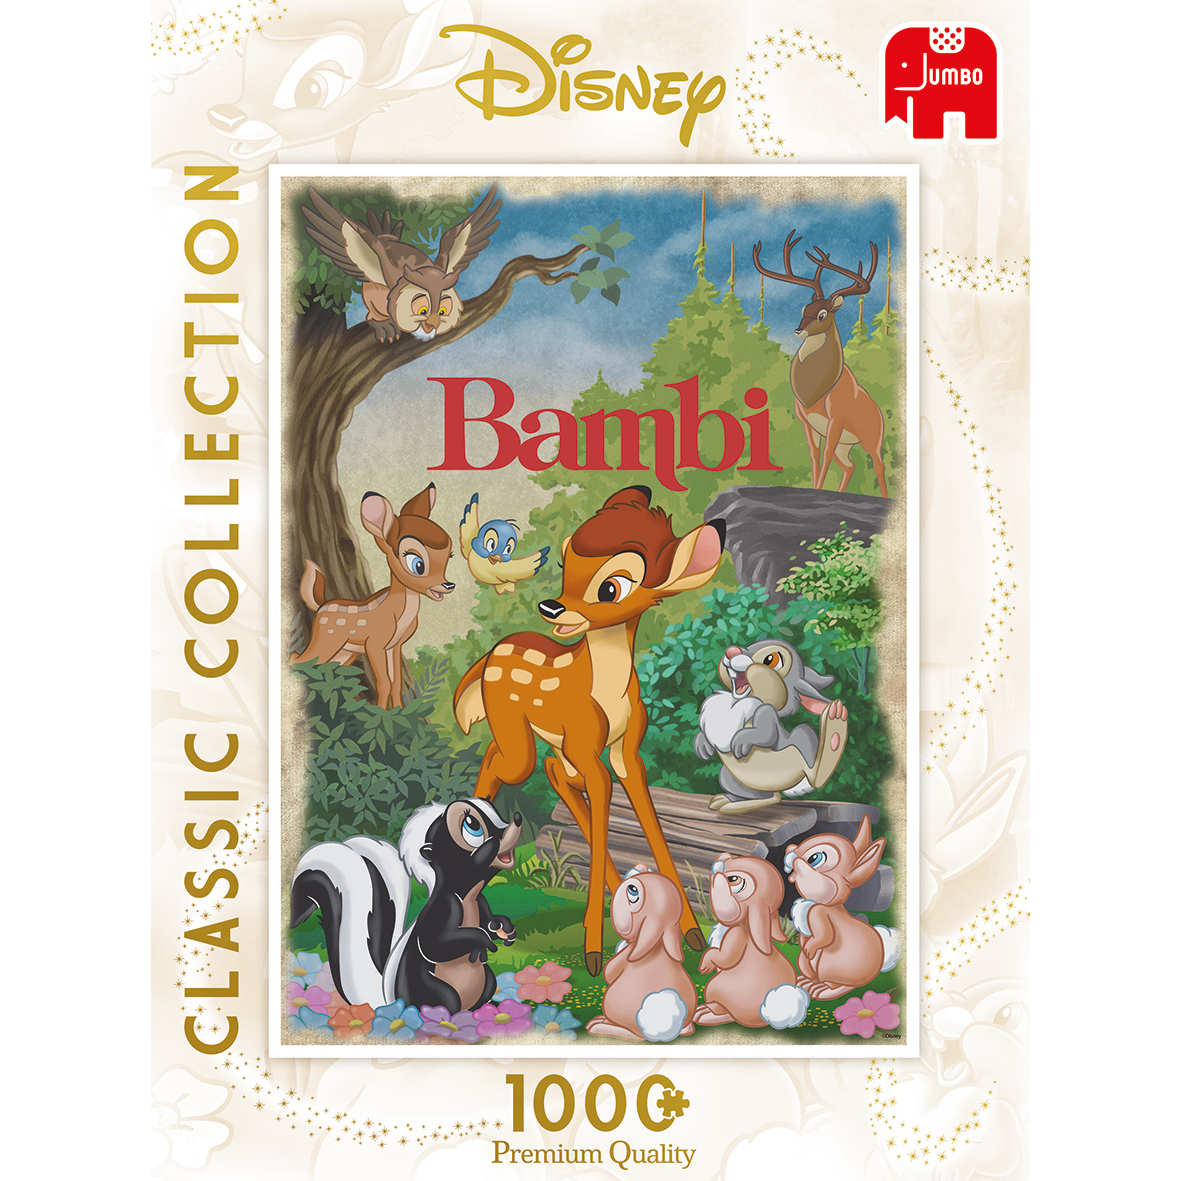 Bambi - Disney Premium Puzzle (1000 pieces) cover